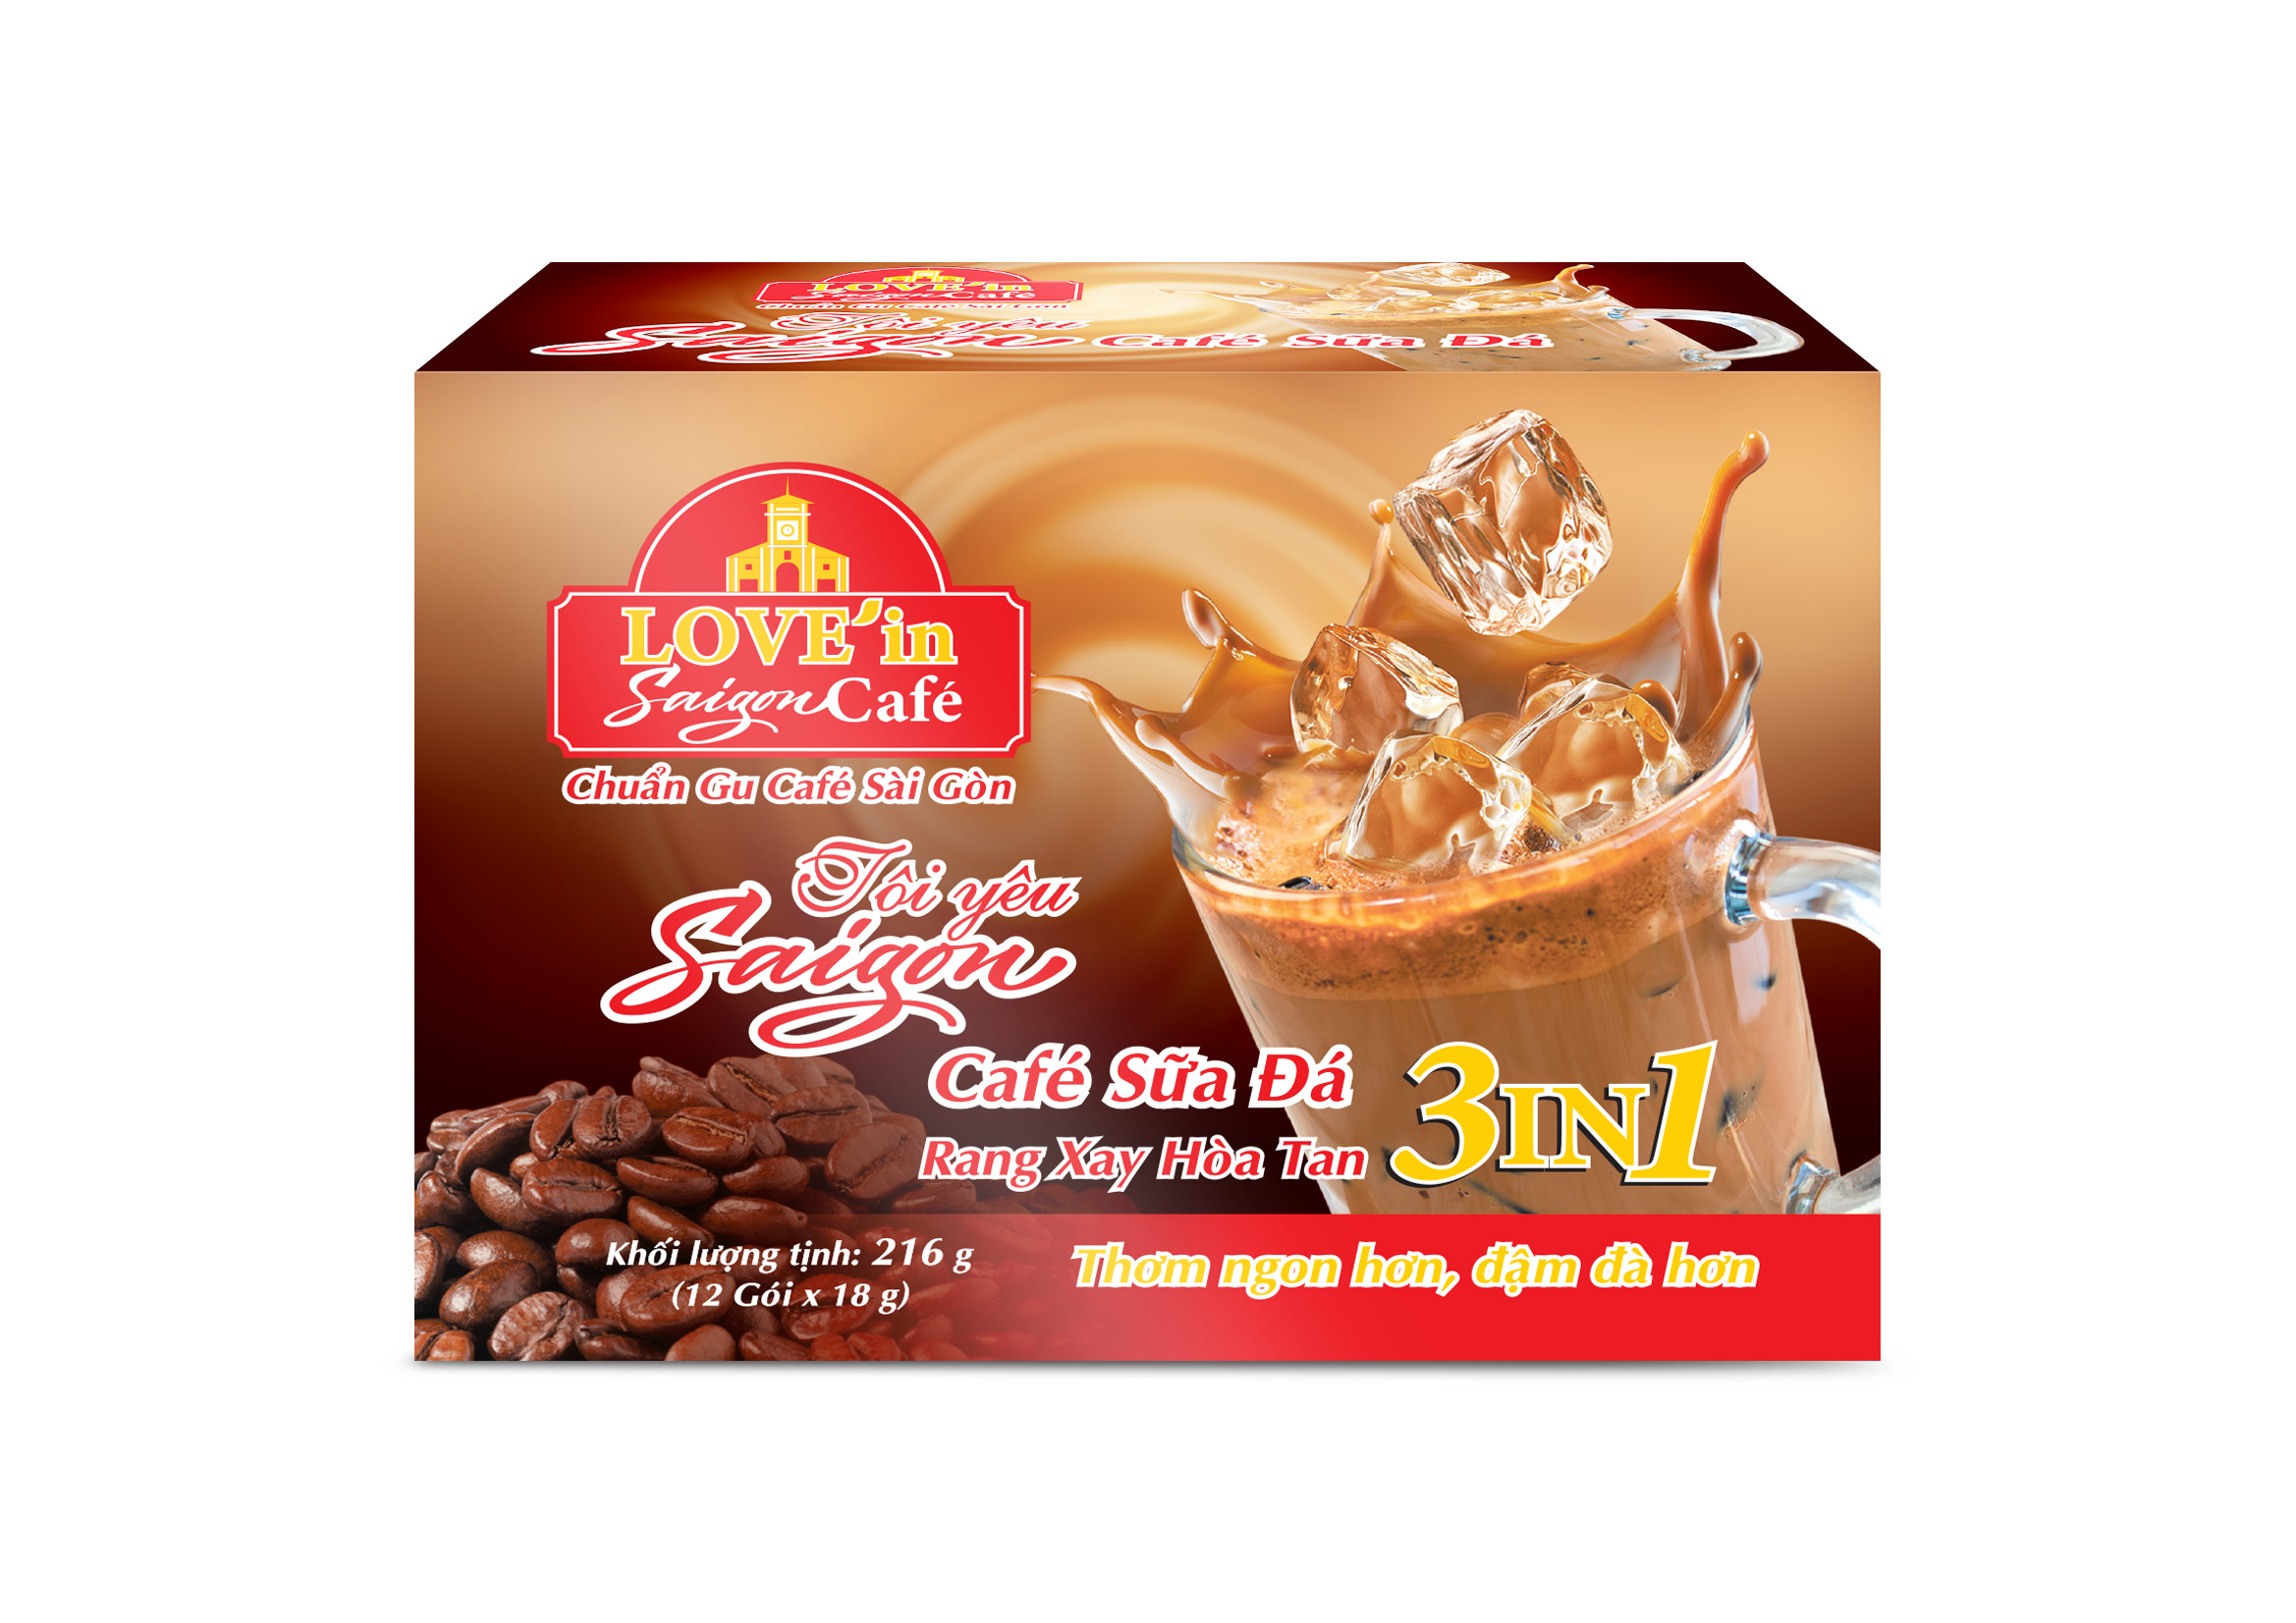 Cà Phê Sữa Rang Xay Hòa Tan 3IN1 LOVE’IN SAIGON CAFE - Thơm Ngon Hơn, Đậm Đà Hơn - Khánh Hòa NutriFoods  (Túi 18 gói x 18g)